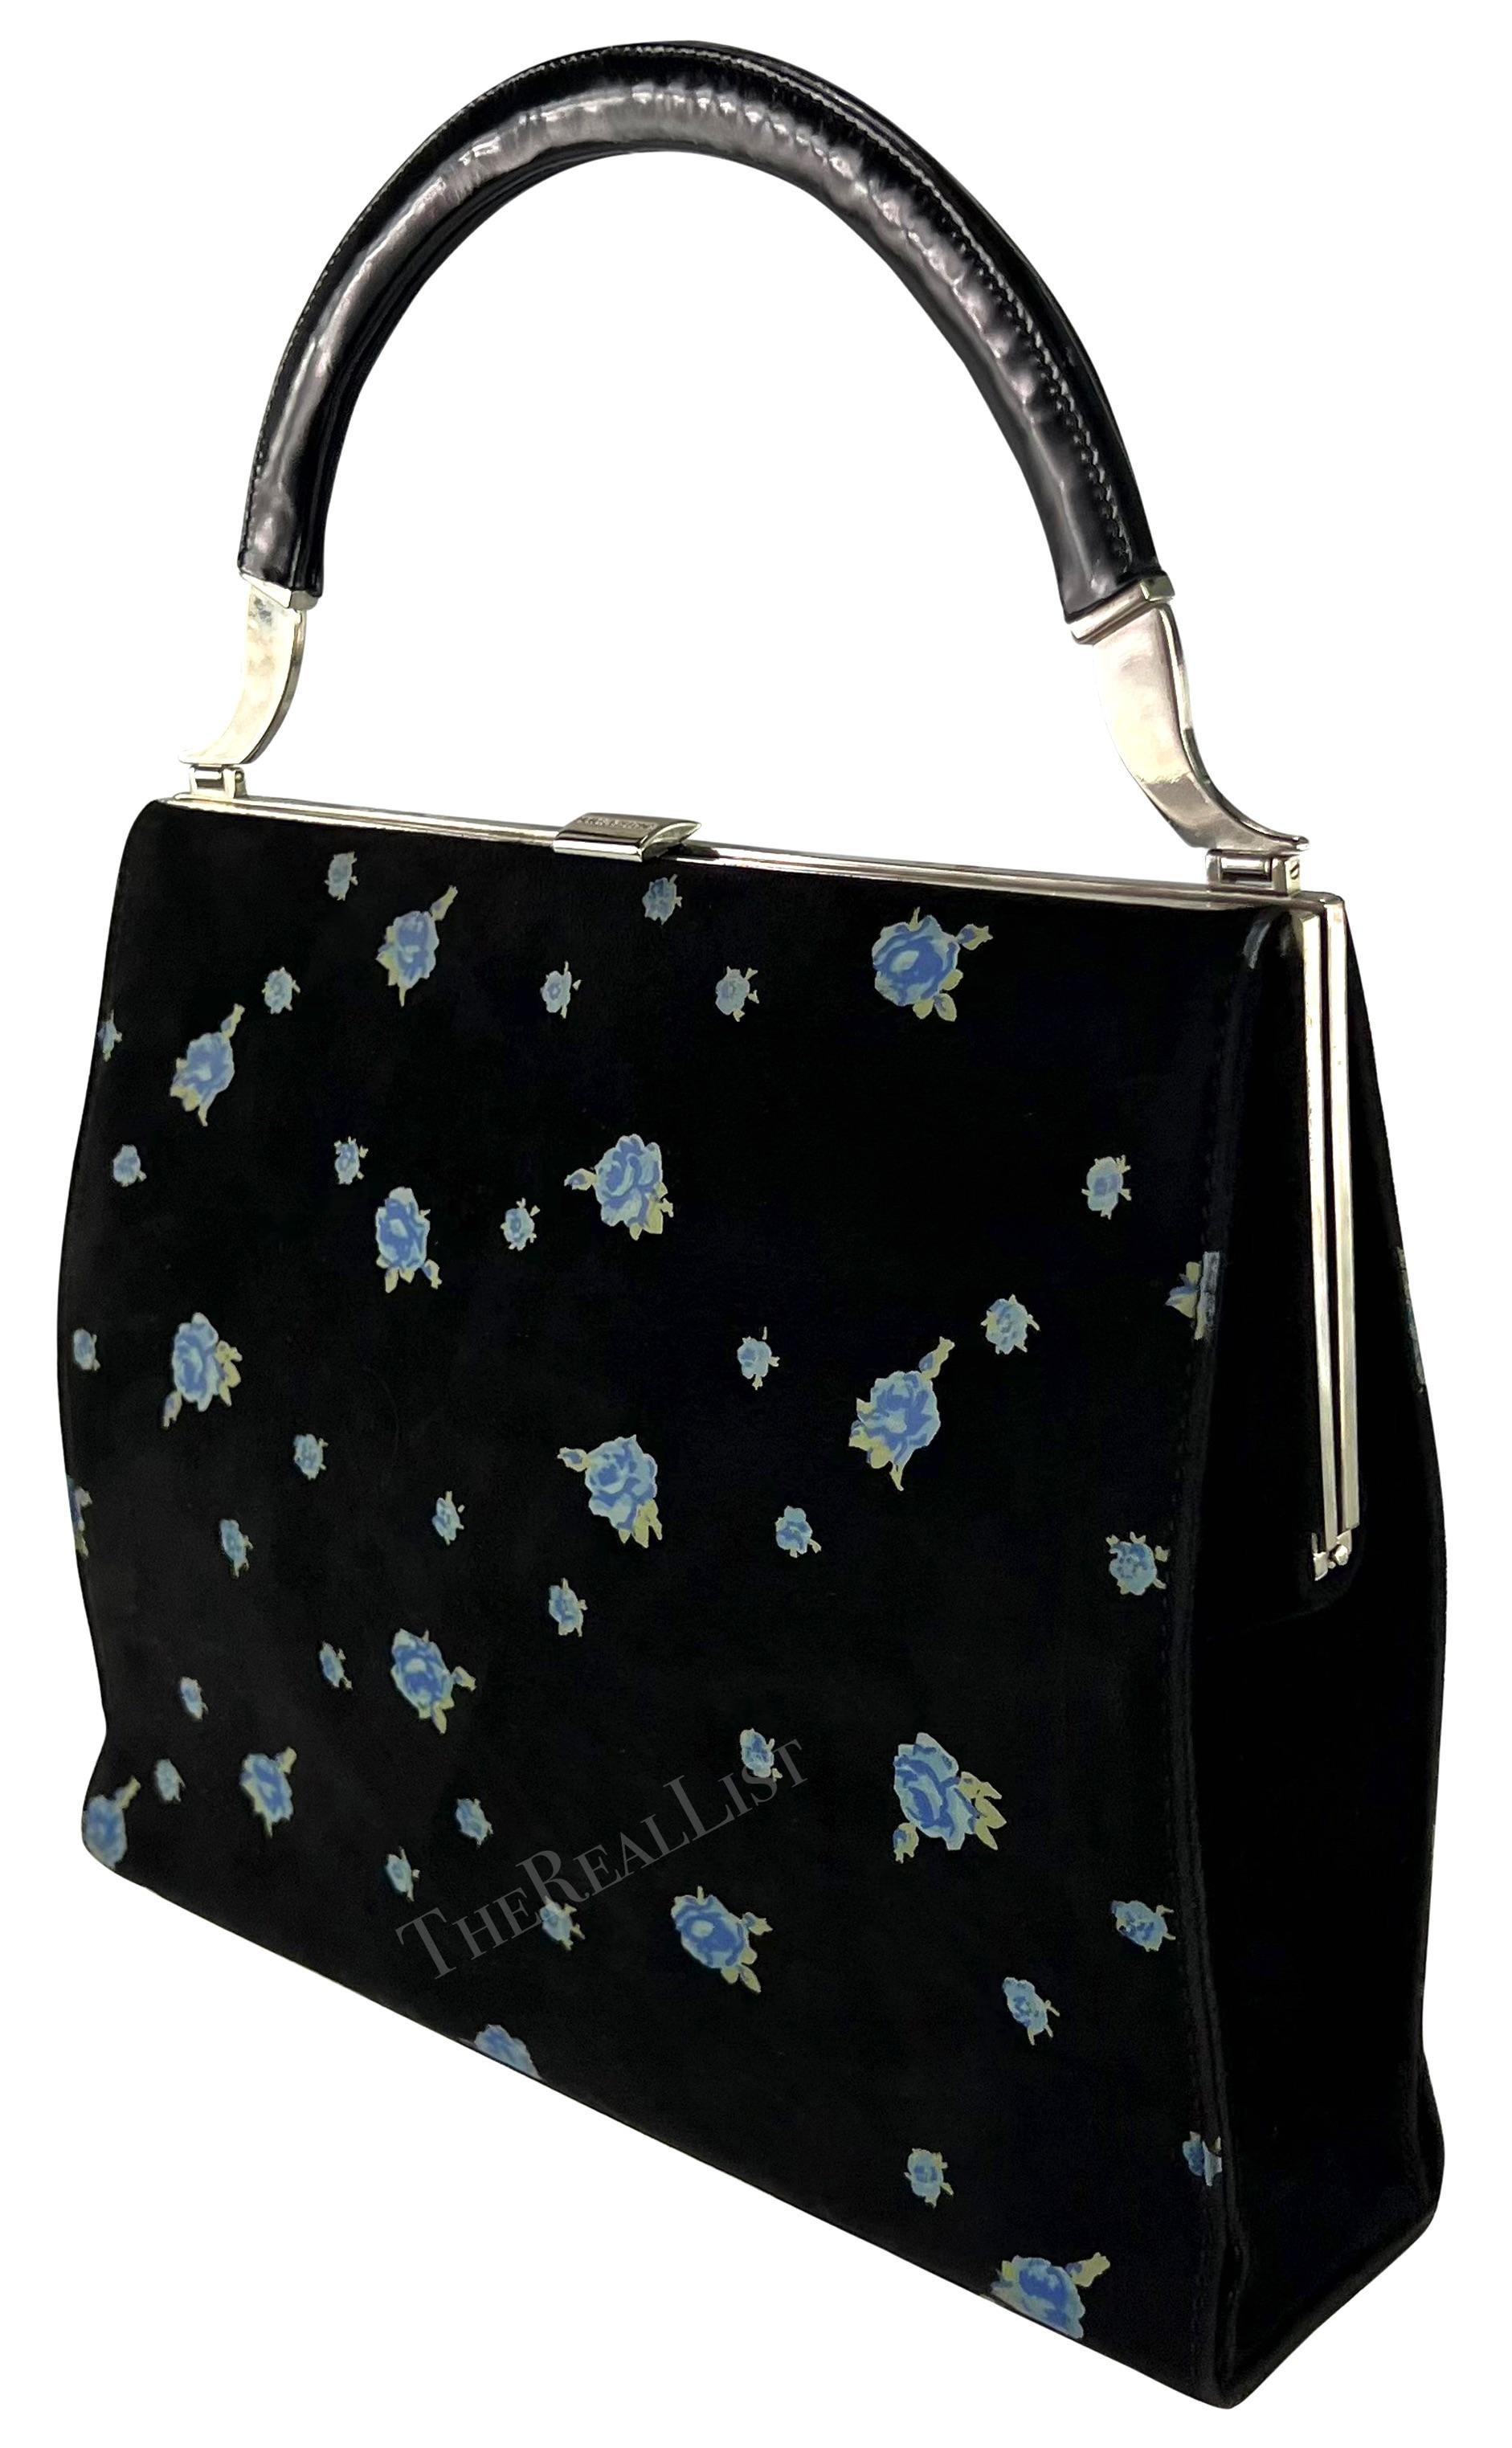 Un fabuleux sac en daim noir Dolce & Gabbana datant des années 1990. Confectionné en daim, ce sac présente un imprimé rose bleu saisissant. L'anse supérieure est constituée d'une poignée noire brillante et est complétée par des accents argentés et